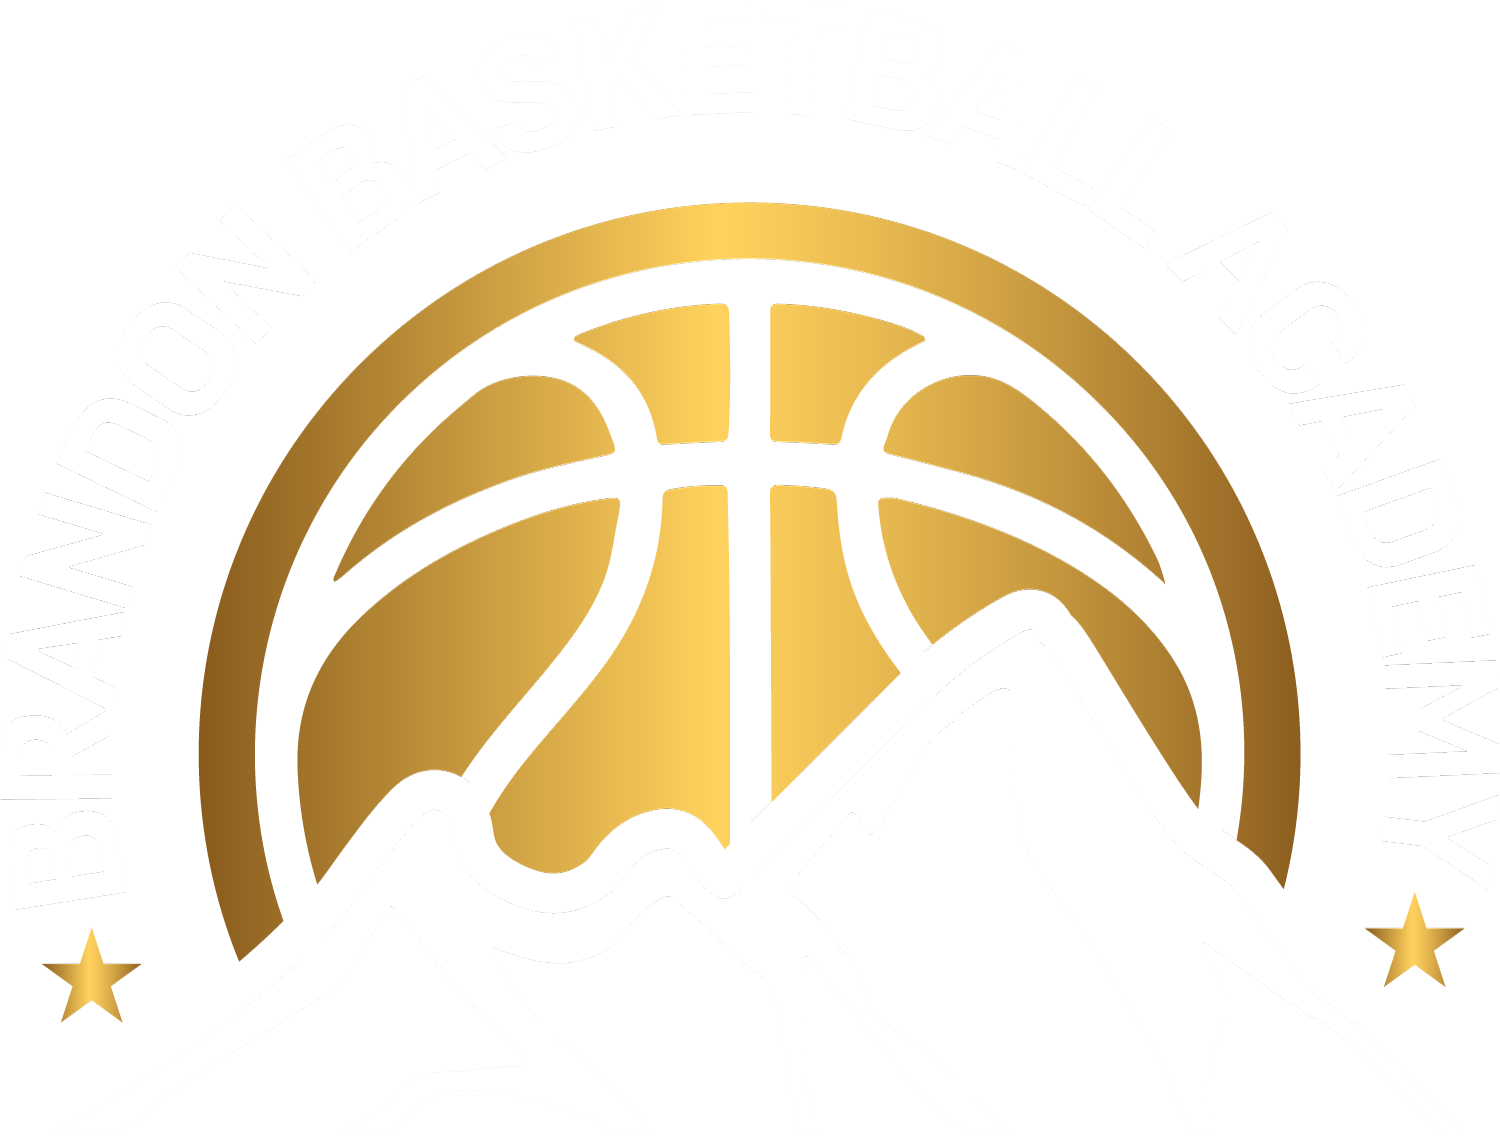 Brandon Basketball Academy